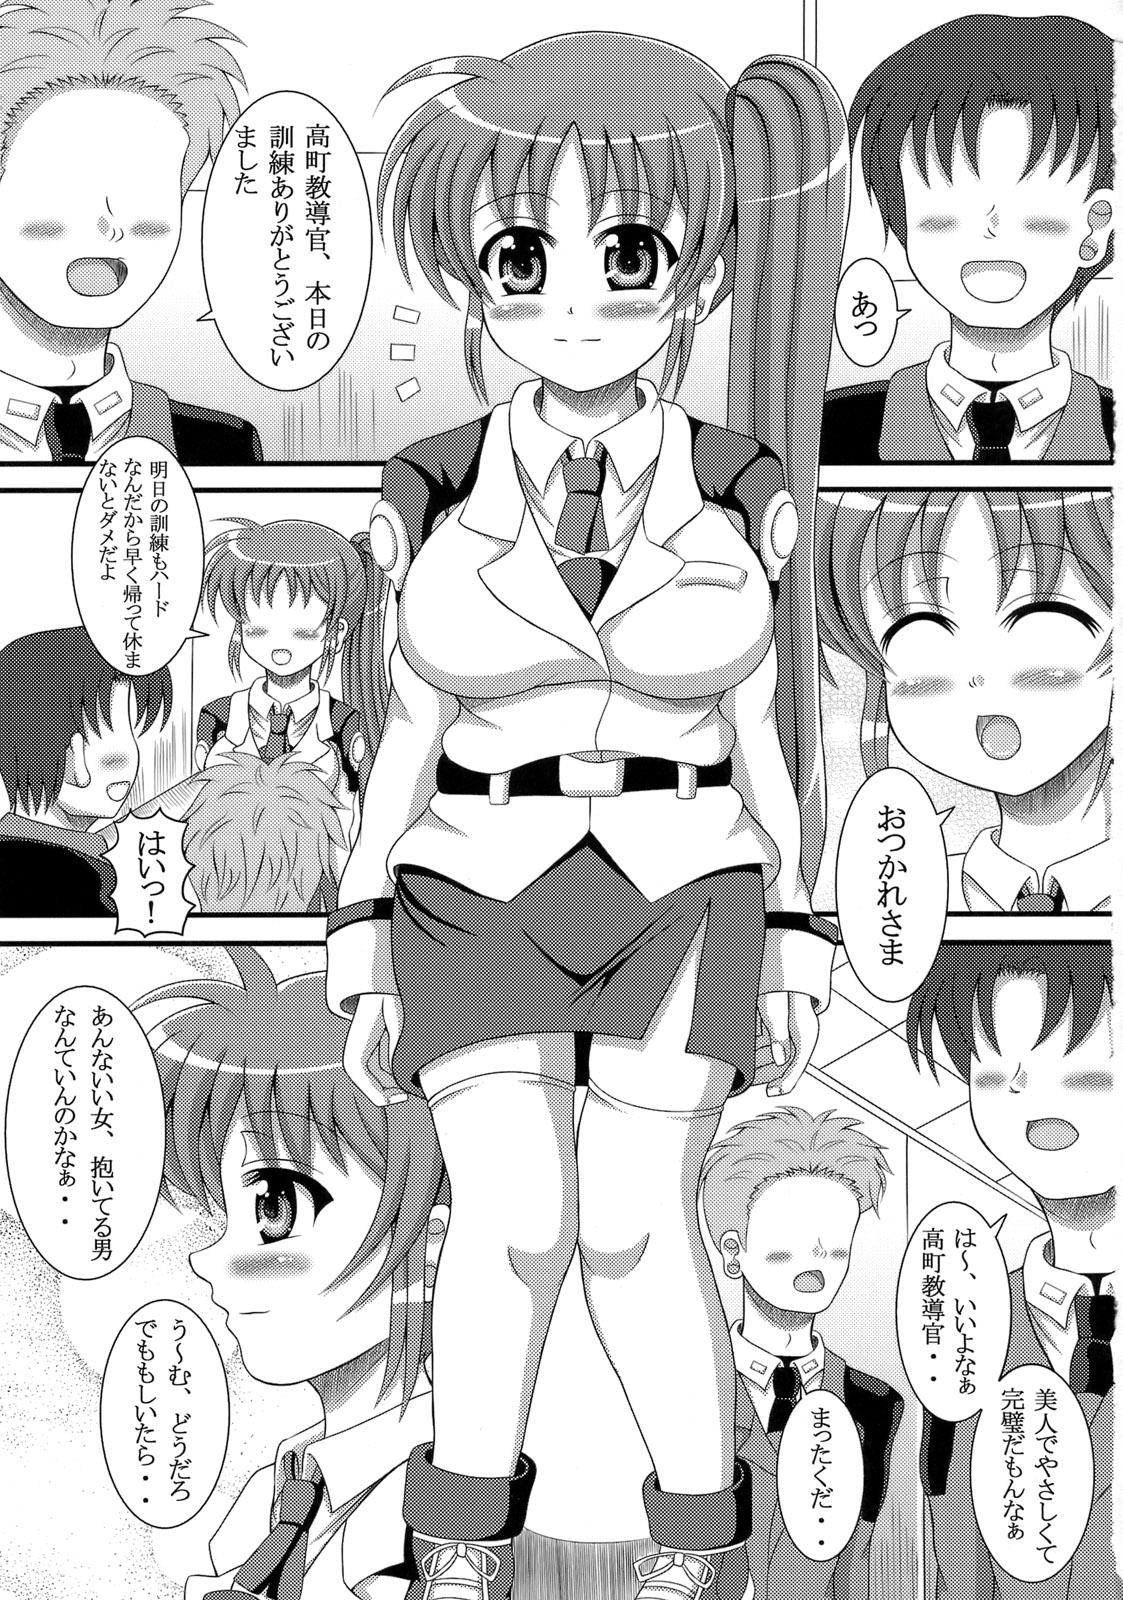 Ssbbw Ecchi na Nanoha-San ha Sukidesuka? - Mahou shoujo lyrical nanoha Facials - Page 2